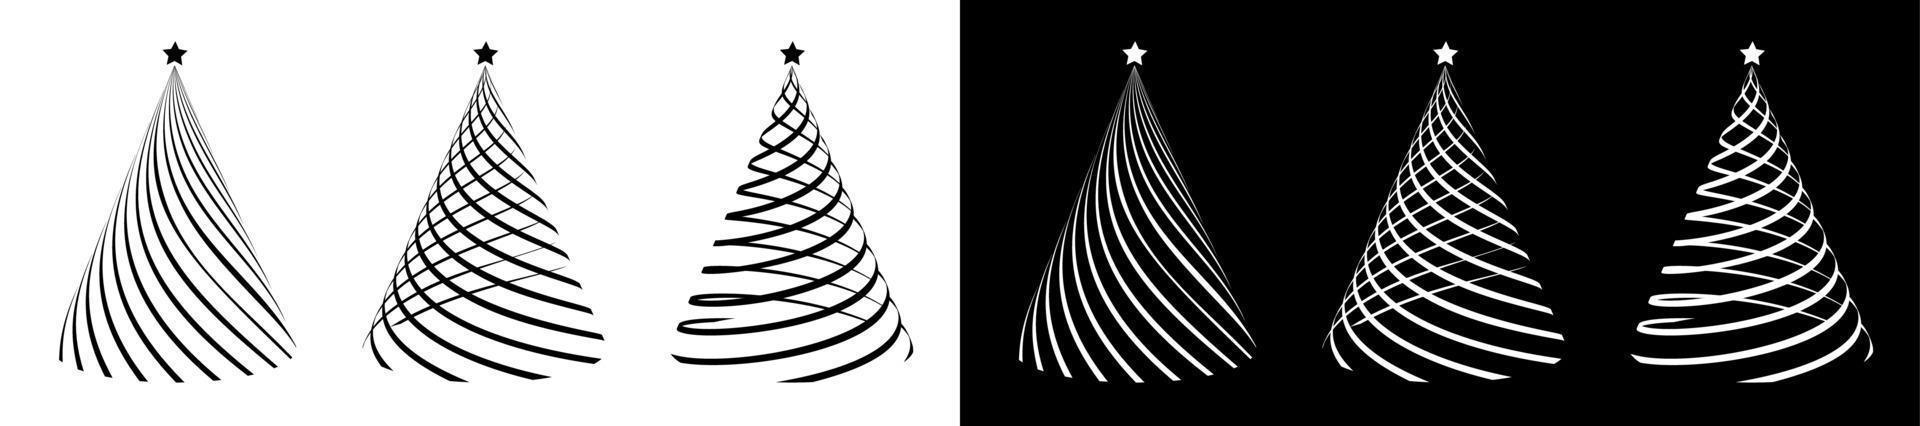 conjunto de siluetas de árboles de navidad, estilizados entrelazados con una cinta festiva. navidad y año nuevo 2021. iconos. vectores en blanco y negro